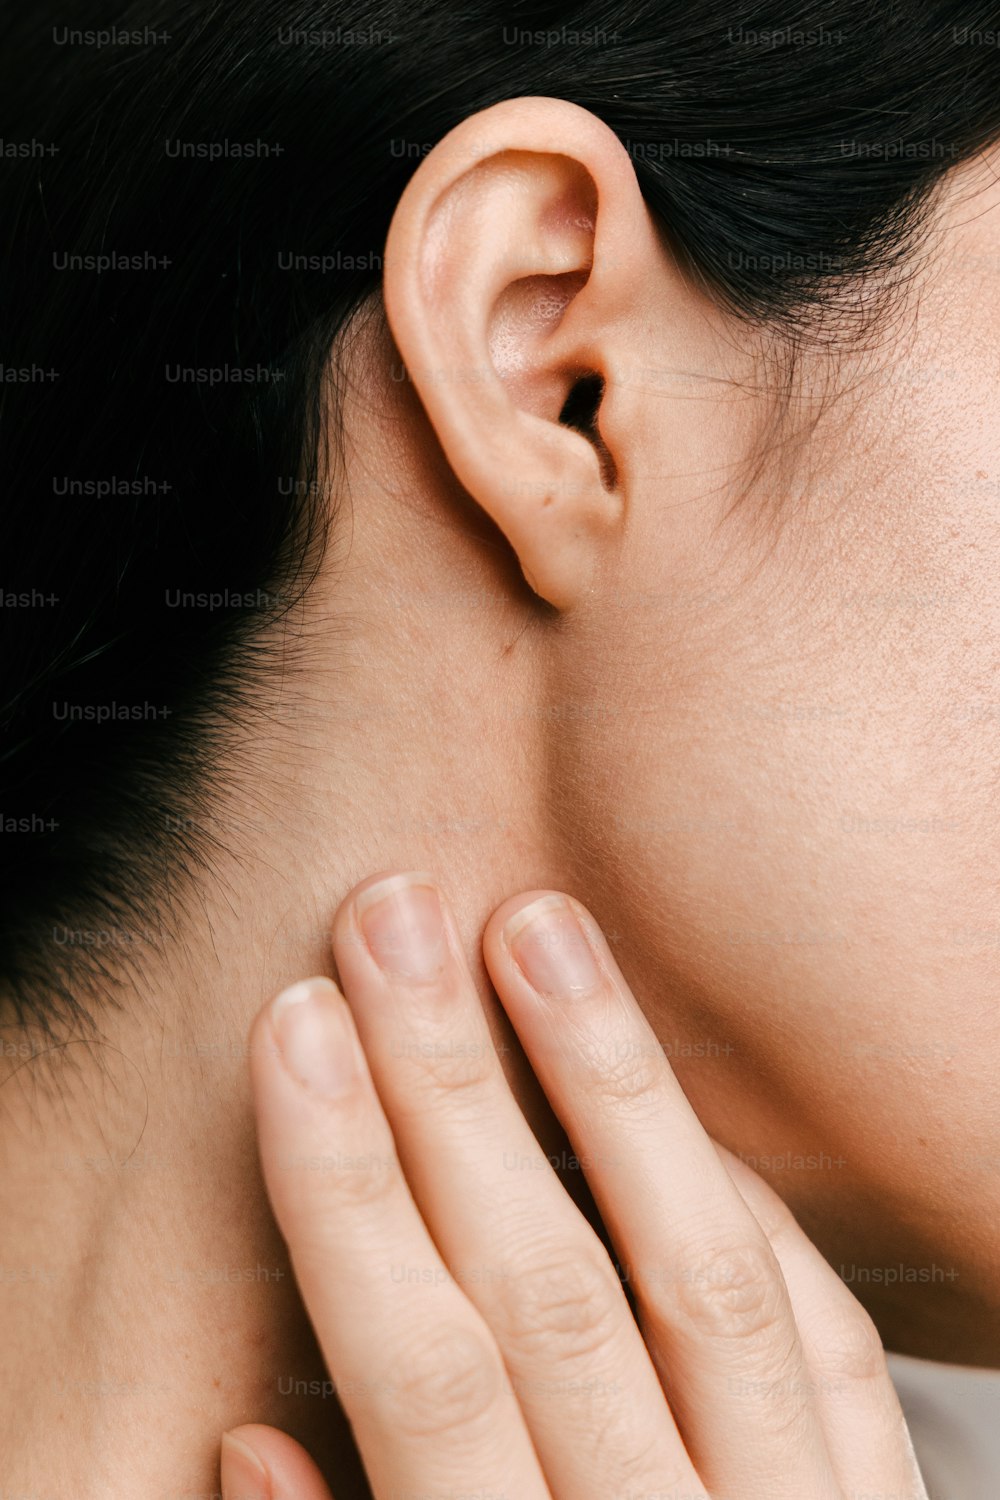 un gros plan d’une personne touchant son oreille